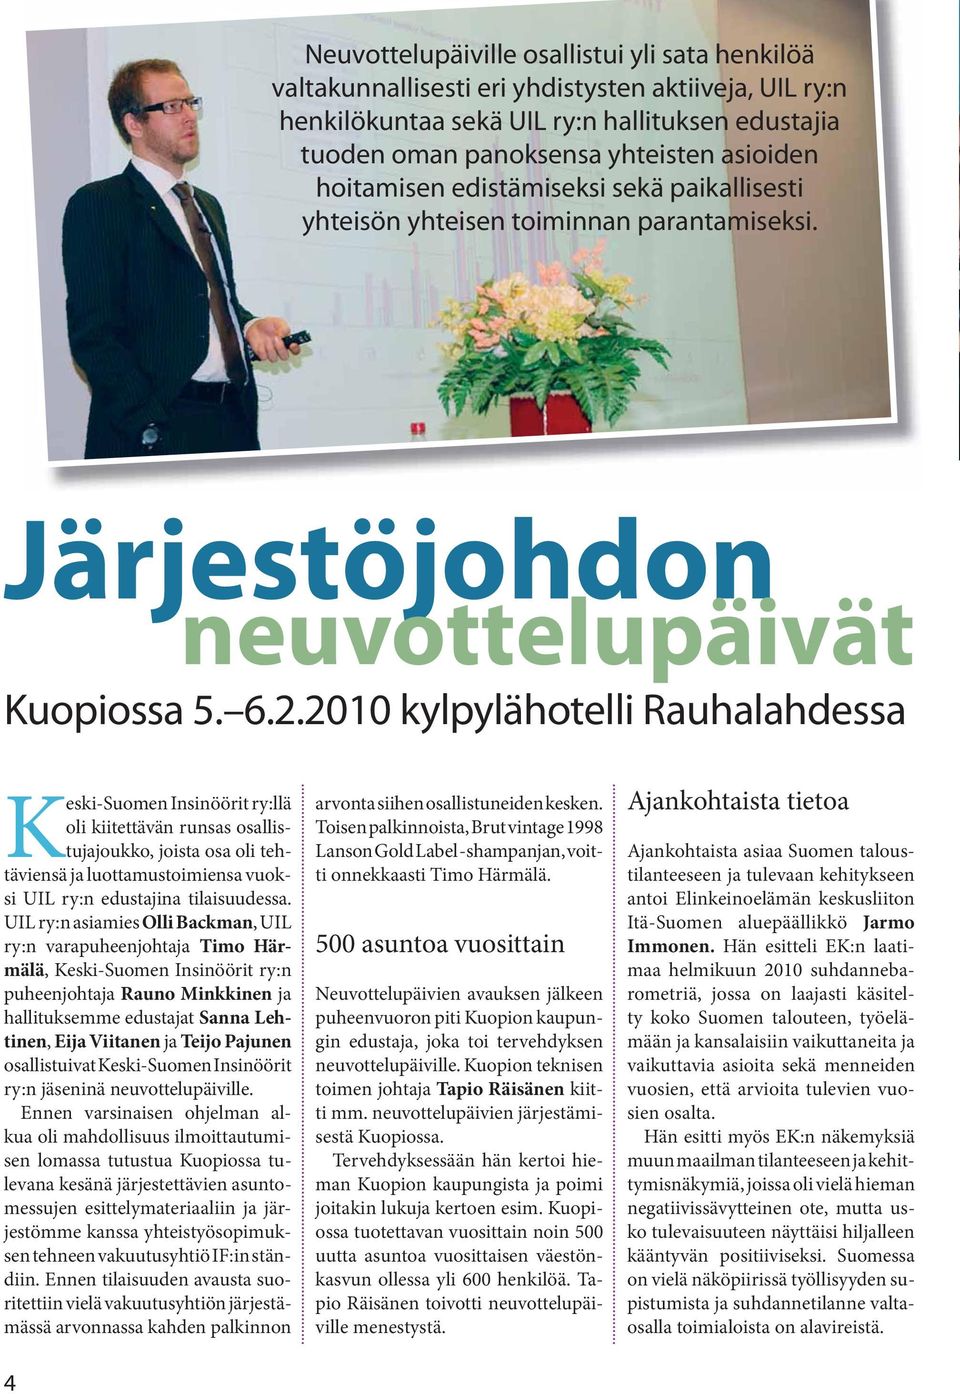 2010 kylpylähotelli Rauhalahdessa Keski-Suomen Insinöörit ry:llä oli kiitettävän runsas osallistujajoukko, joista osa oli tehtäviensä ja luottamustoimiensa vuoksi UIL ry:n edustajina tilaisuudessa.